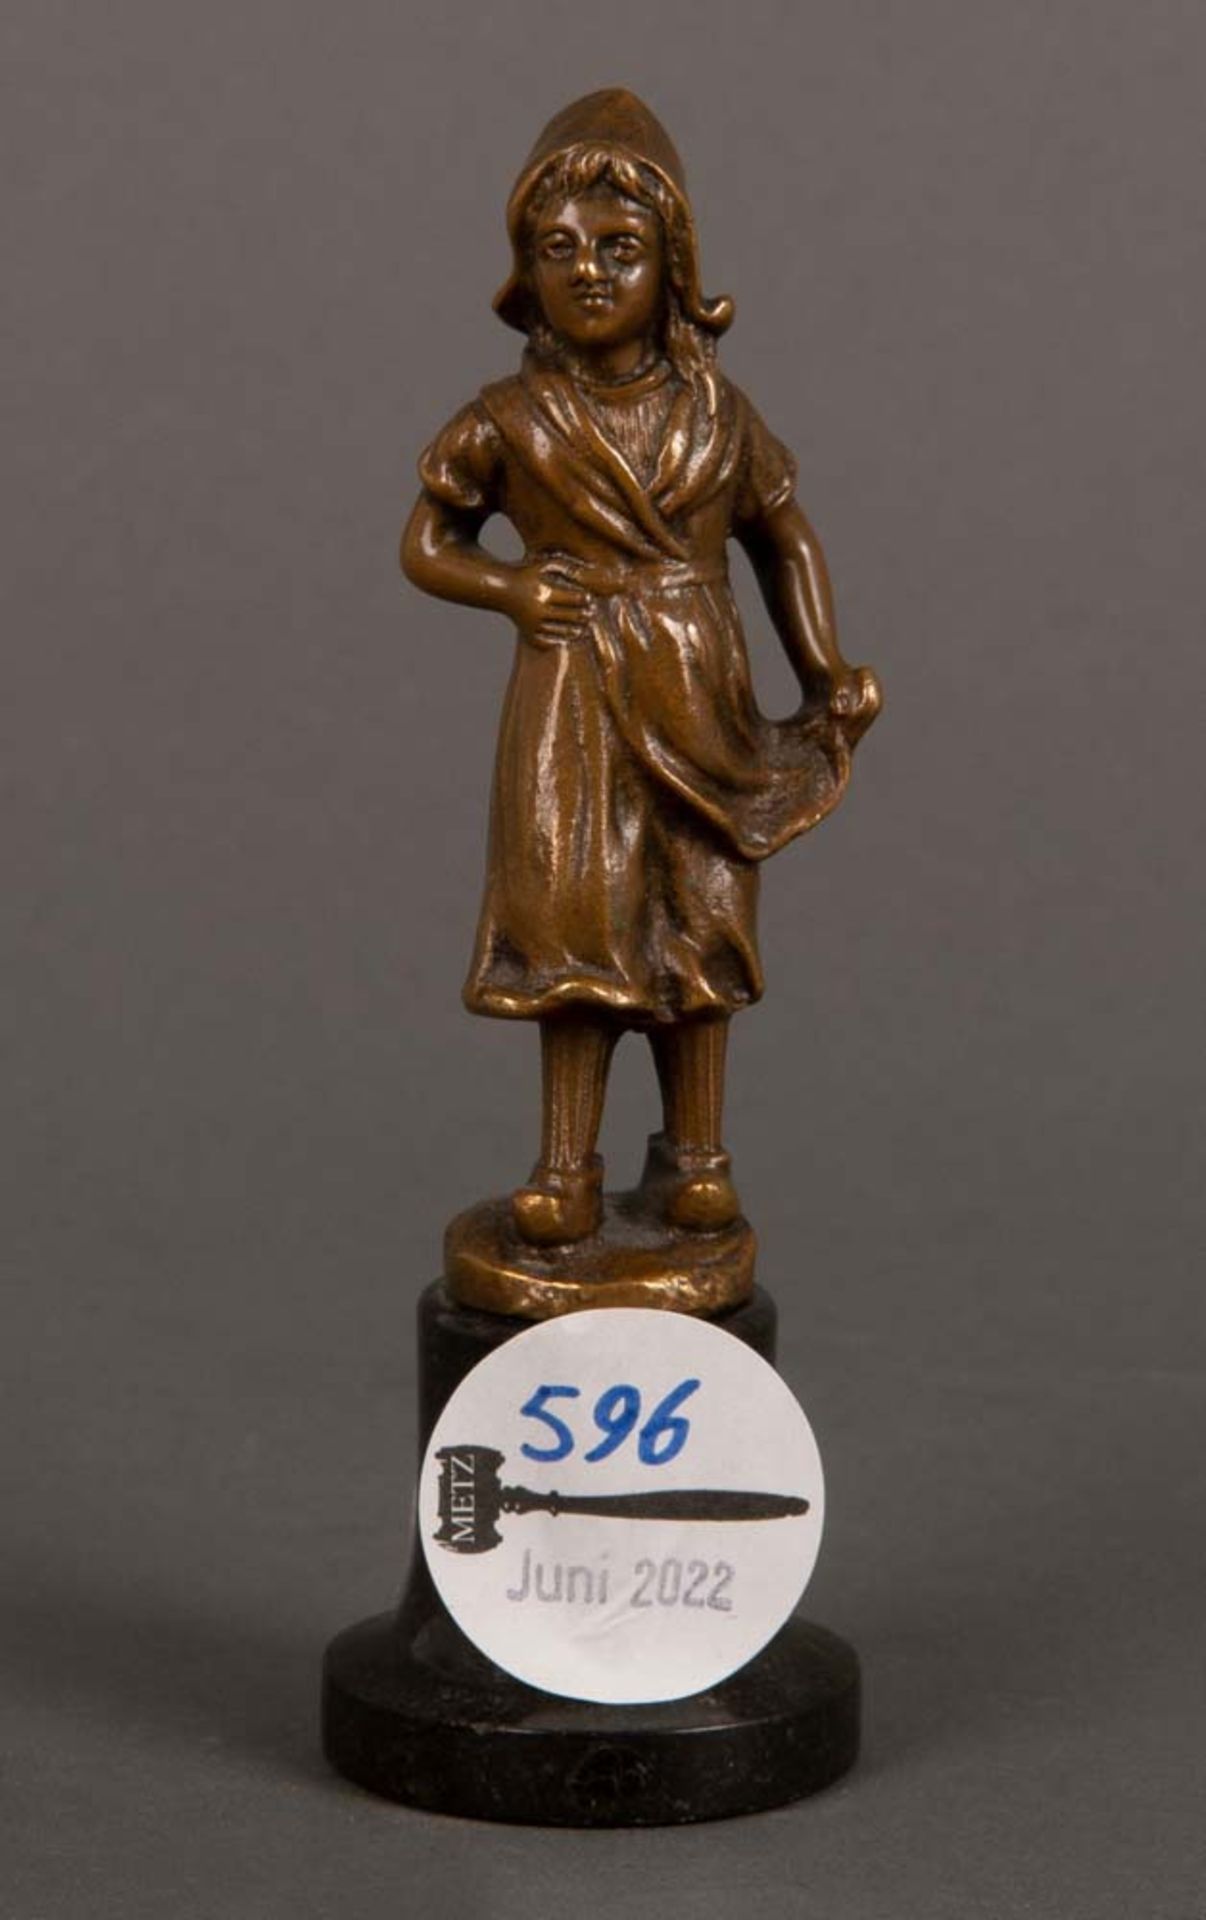 Skulpteur des 19. Jhs. Holländisches Mädchen. Bronze auf Marmorsockel, H=9,5 bzw. 13,2 cm.